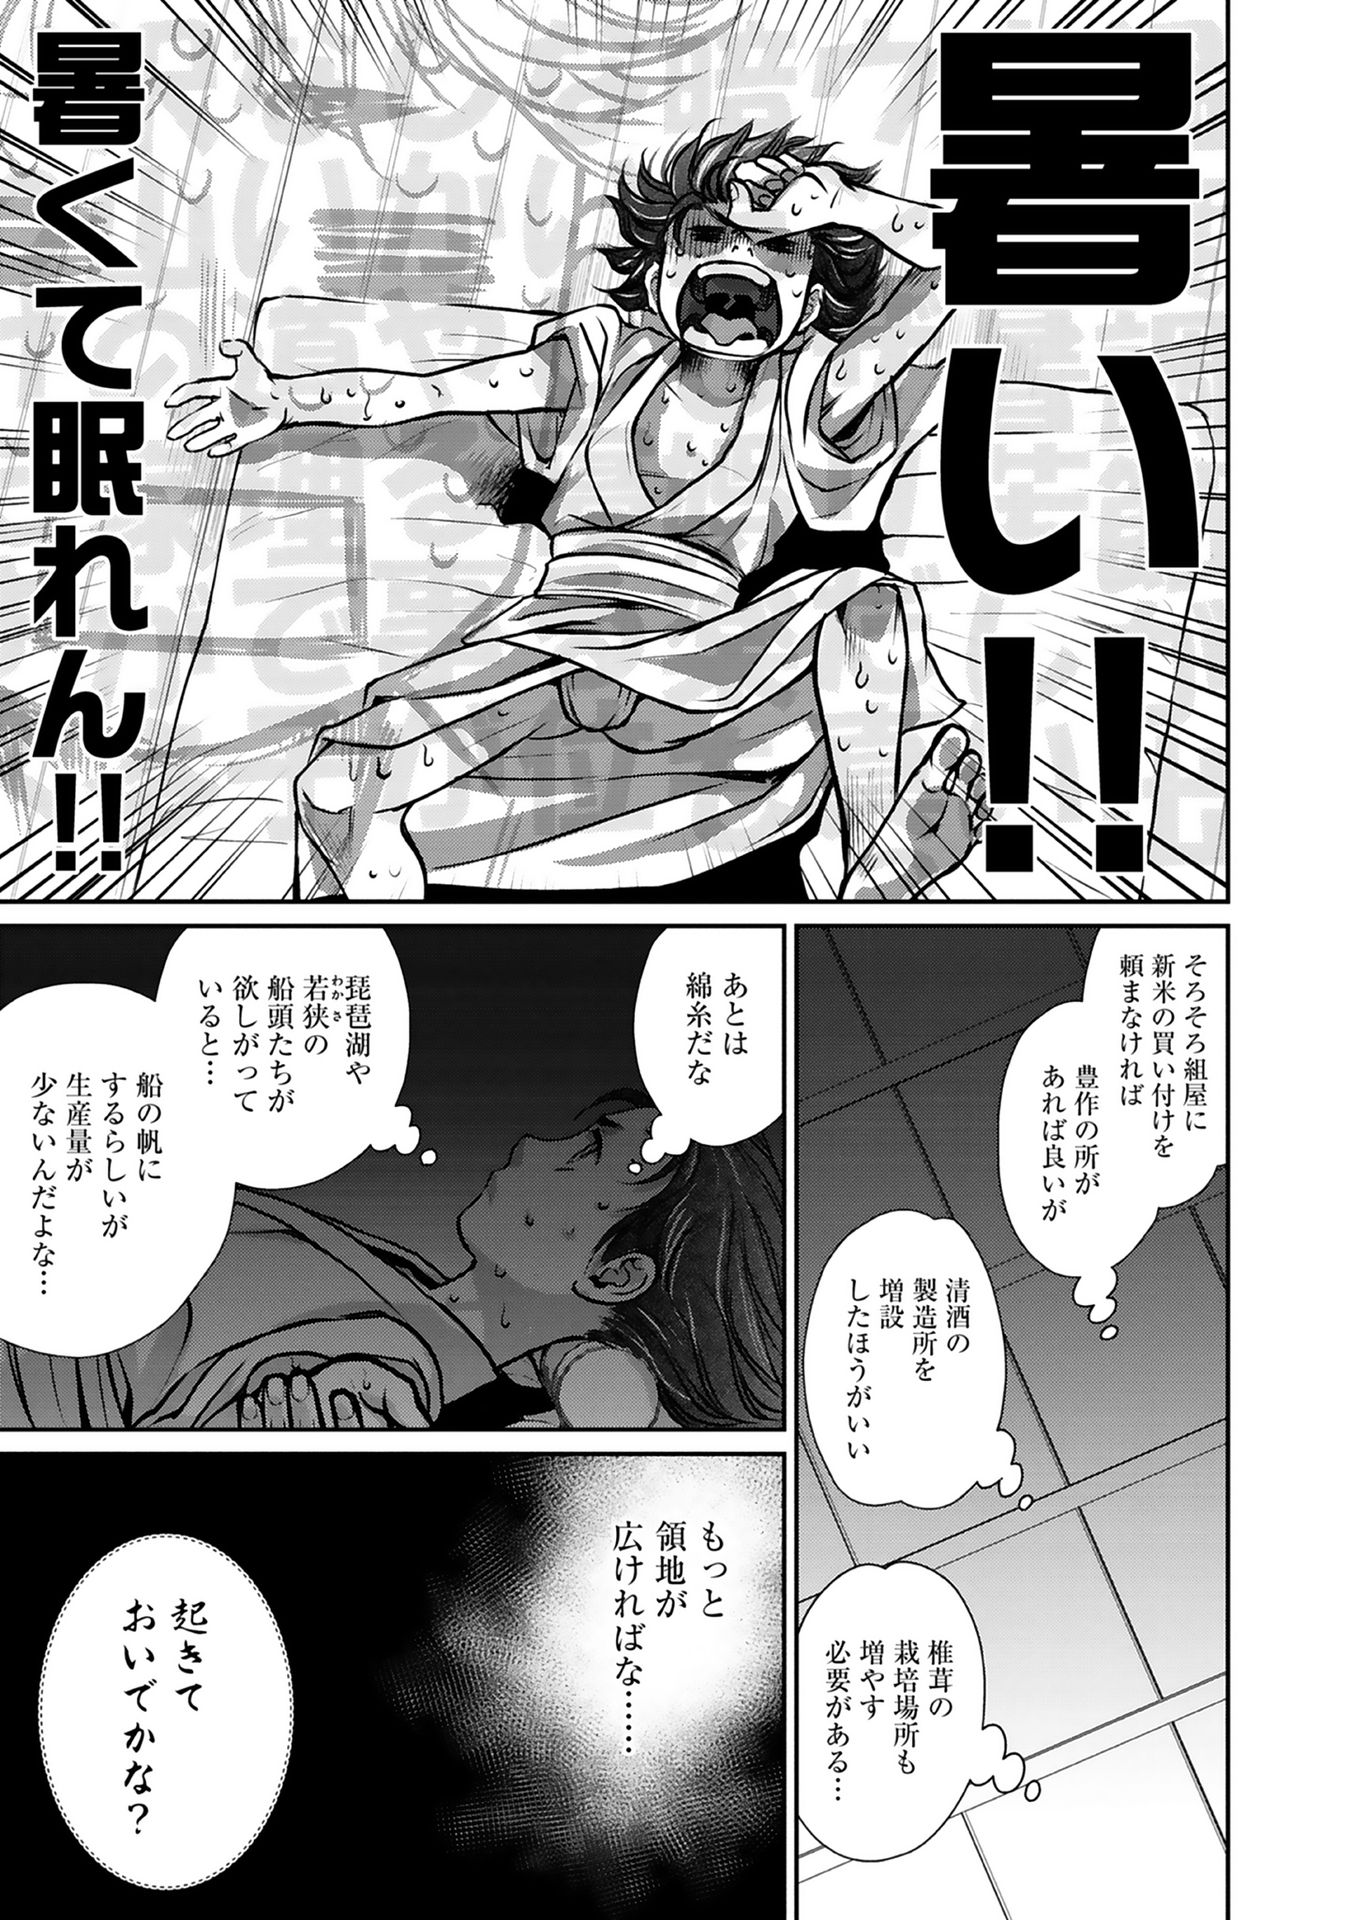 Afumi no Umi – Minamo ga Yureru Toki - Chapter 3 - Page 29